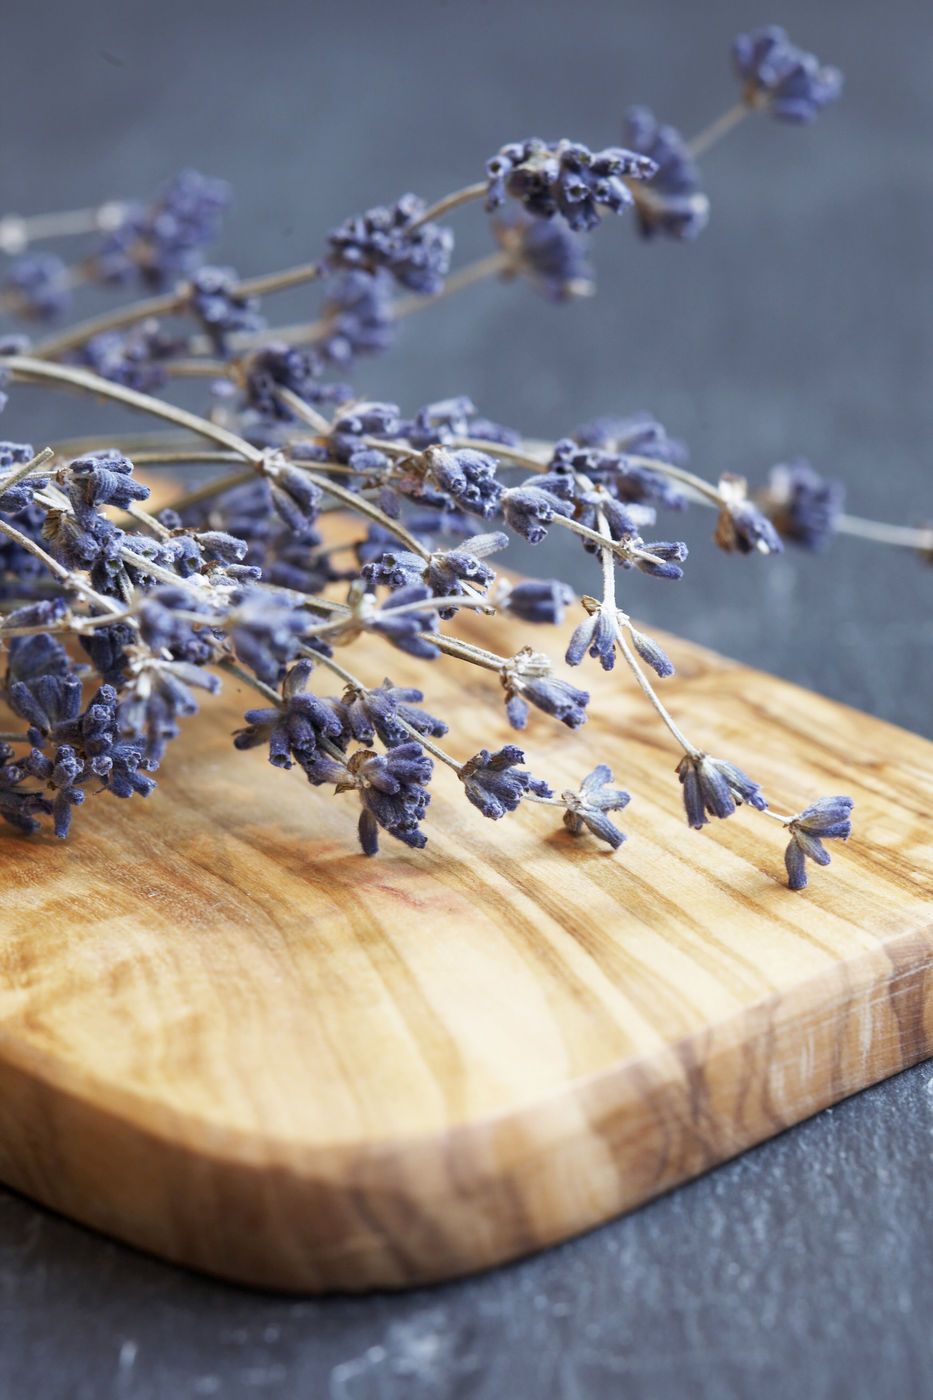 10 lí do để bạn phải yêu mến hoa lavender